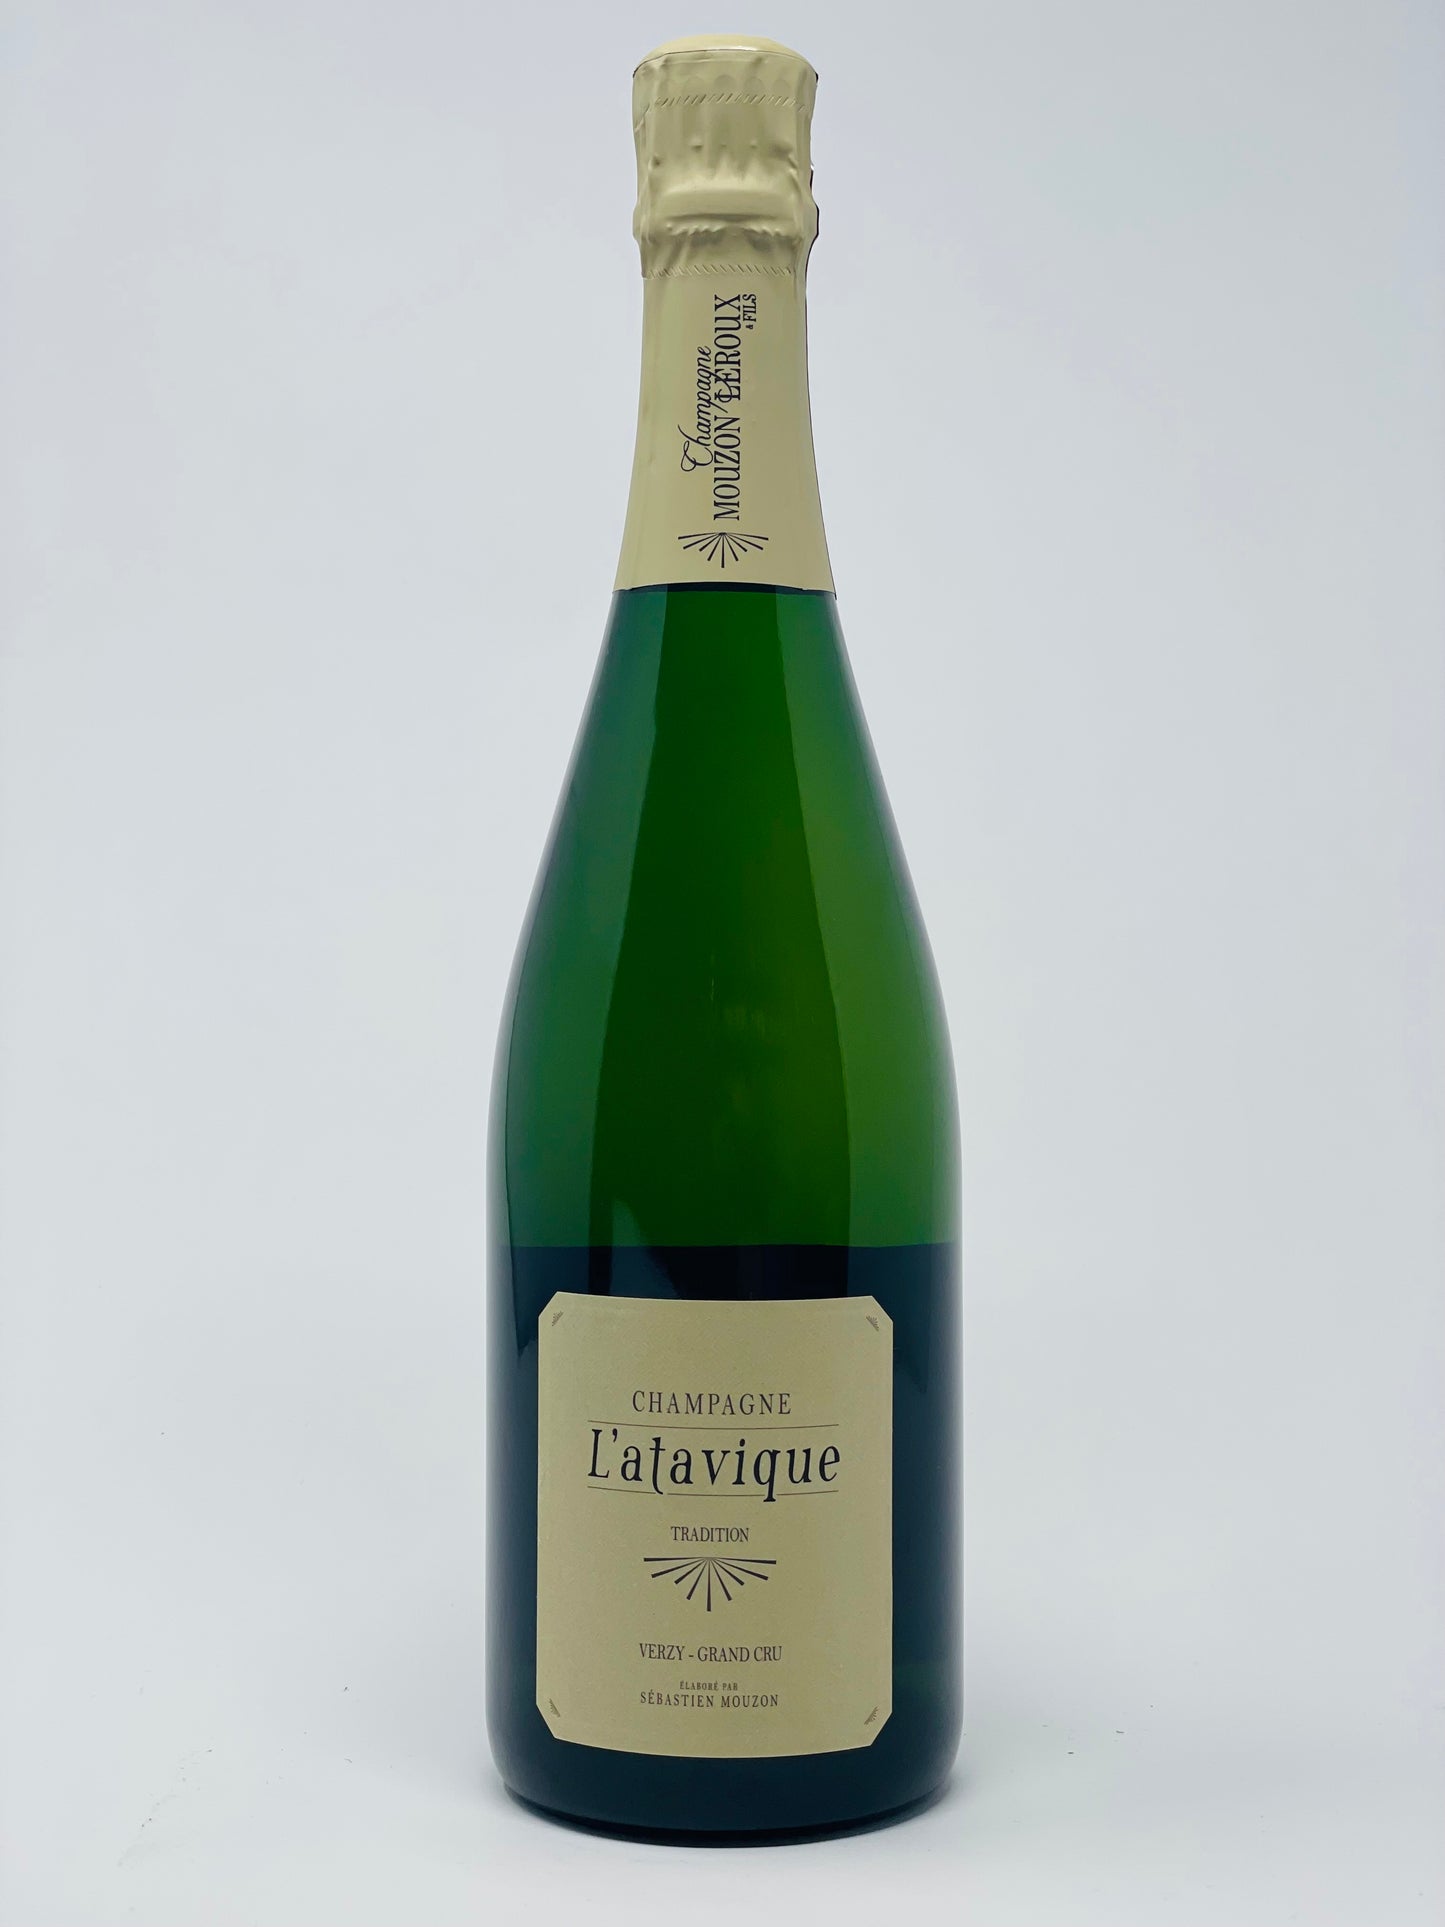 Mouzon-Leroux, Champagne L'Atavique Tradition (NV)